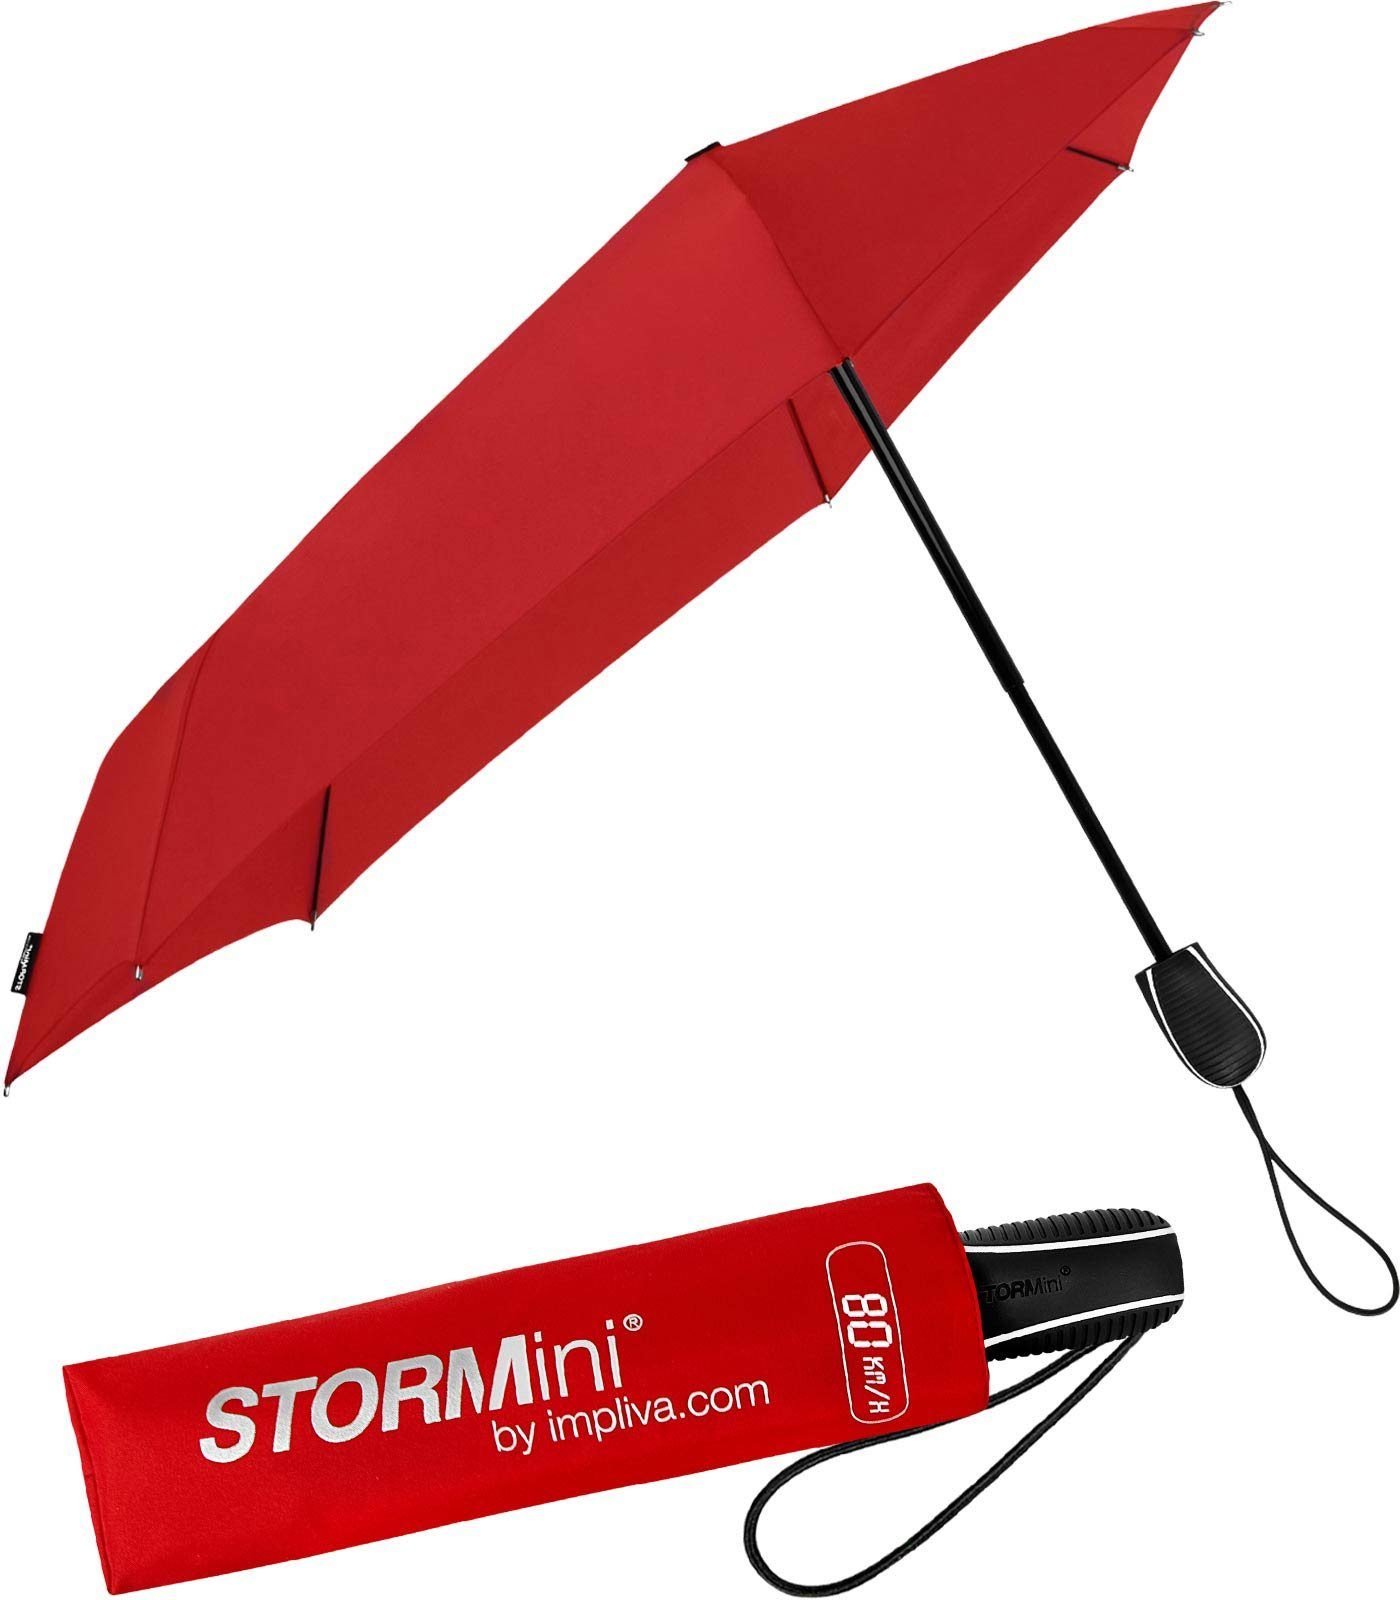 Impliva Taschenregenschirm STORMini aerodynamischer Sturmschirm, durch seine besondere Form dreht sich der Schirm in den Wind, hält bis zu 80 km/h aus rot